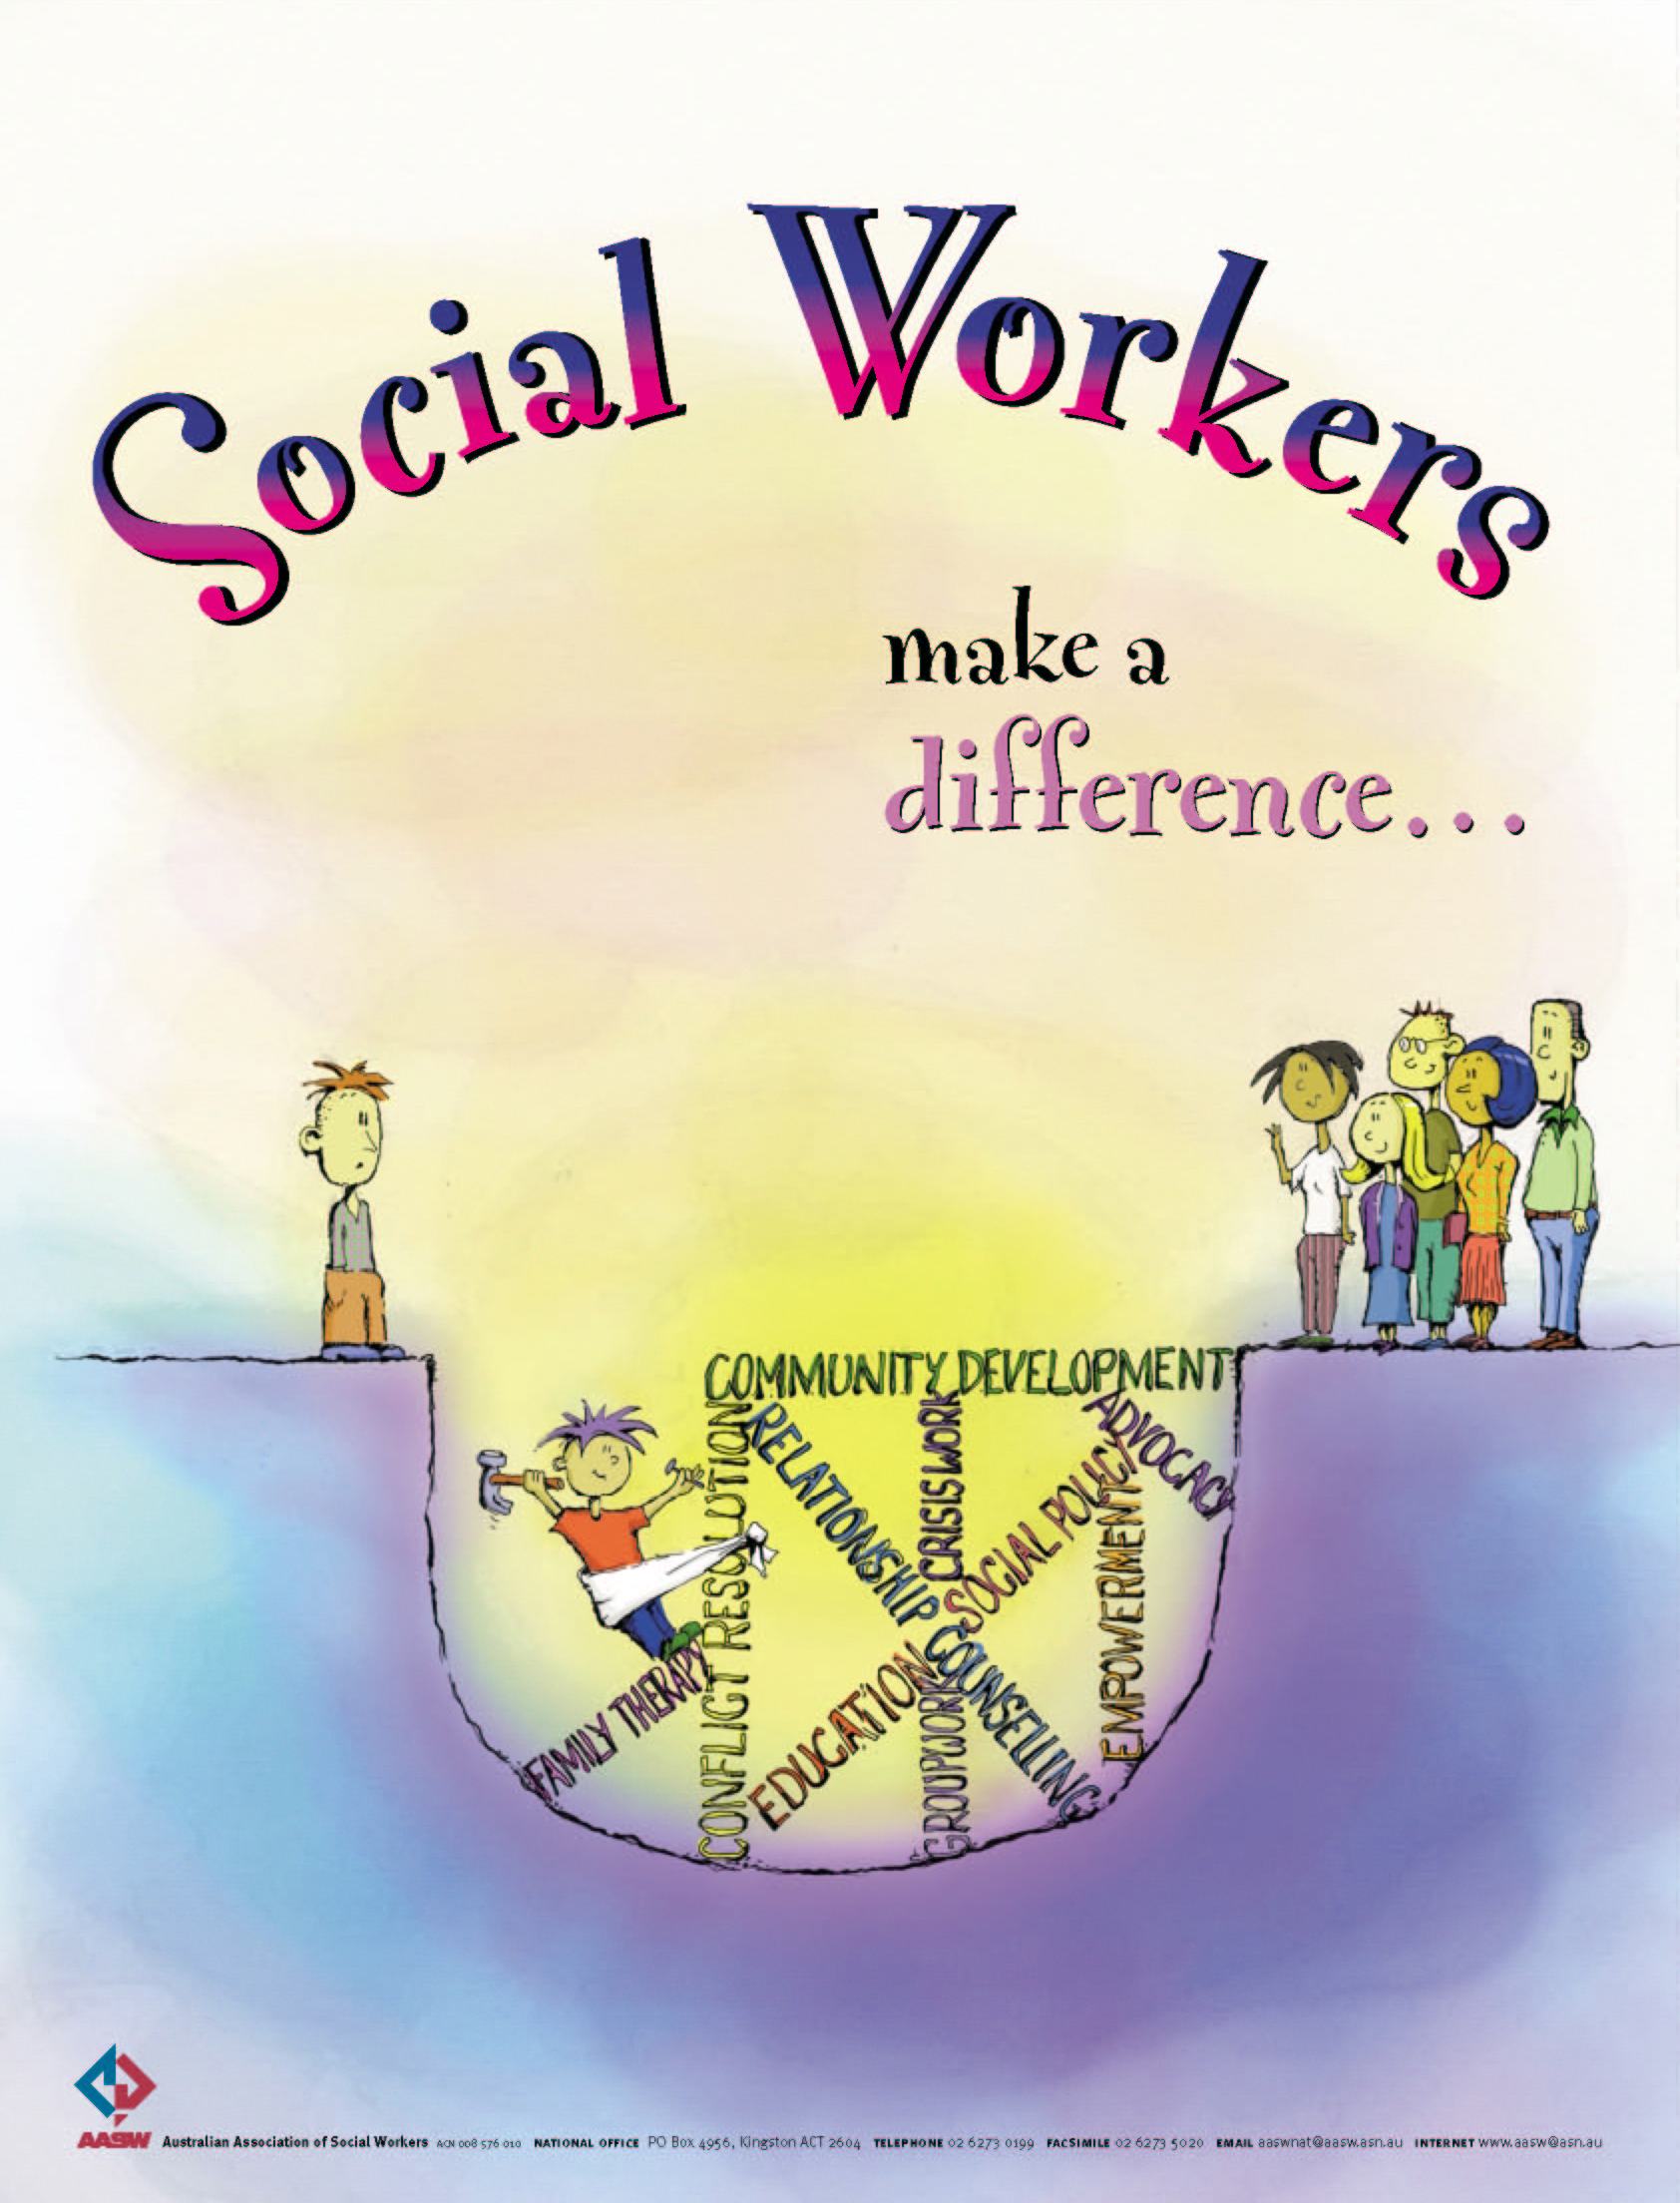 Social Workers RULE!